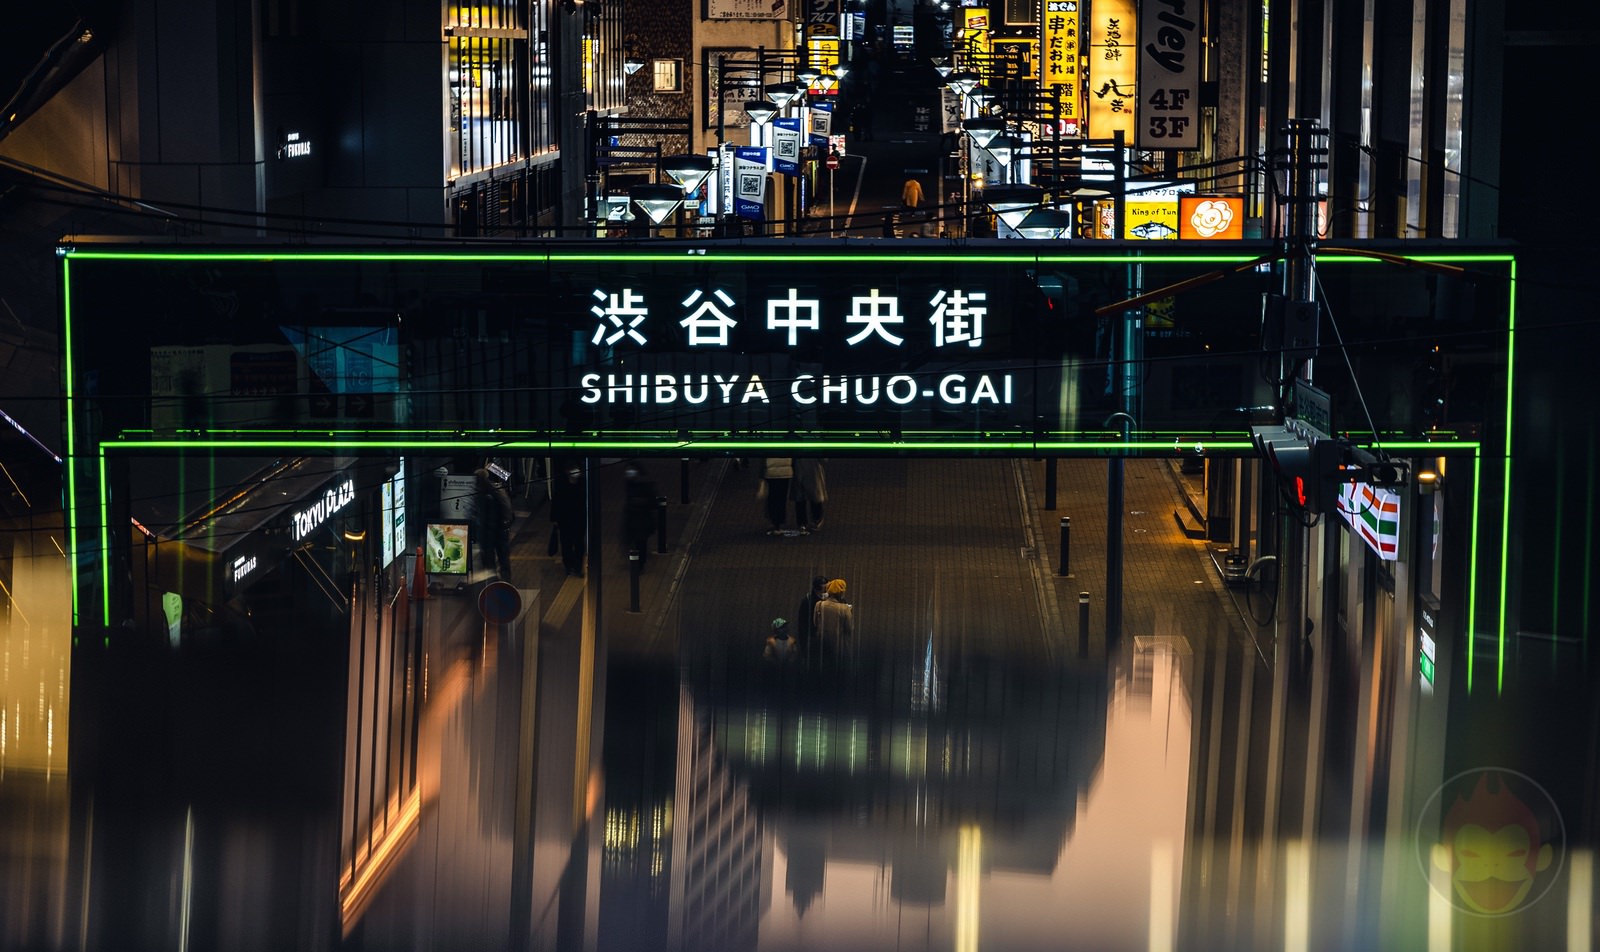 Shibuya Dusk and Night Street Photography with canonr6markII 23